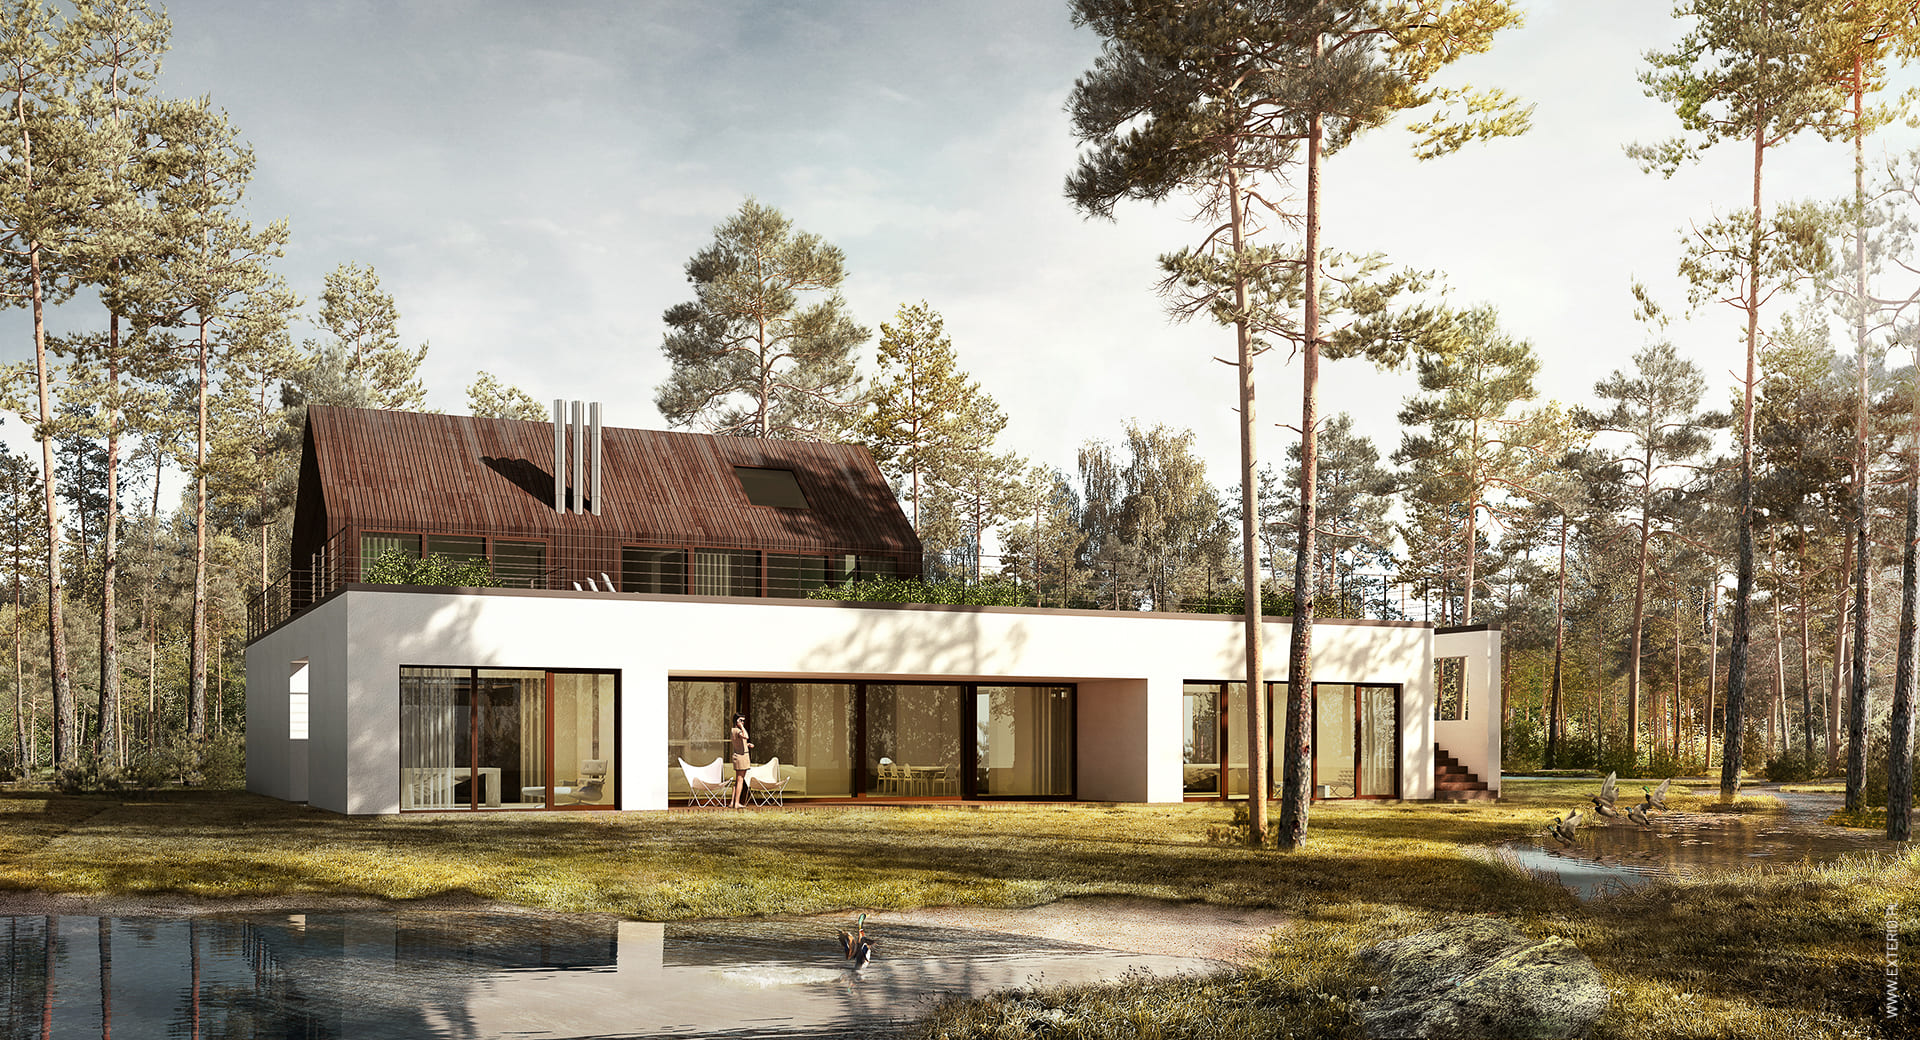 Projekt domu w lesie i nowoczesnej rezydencji "2 w 1" - główne zdjęcie projektu